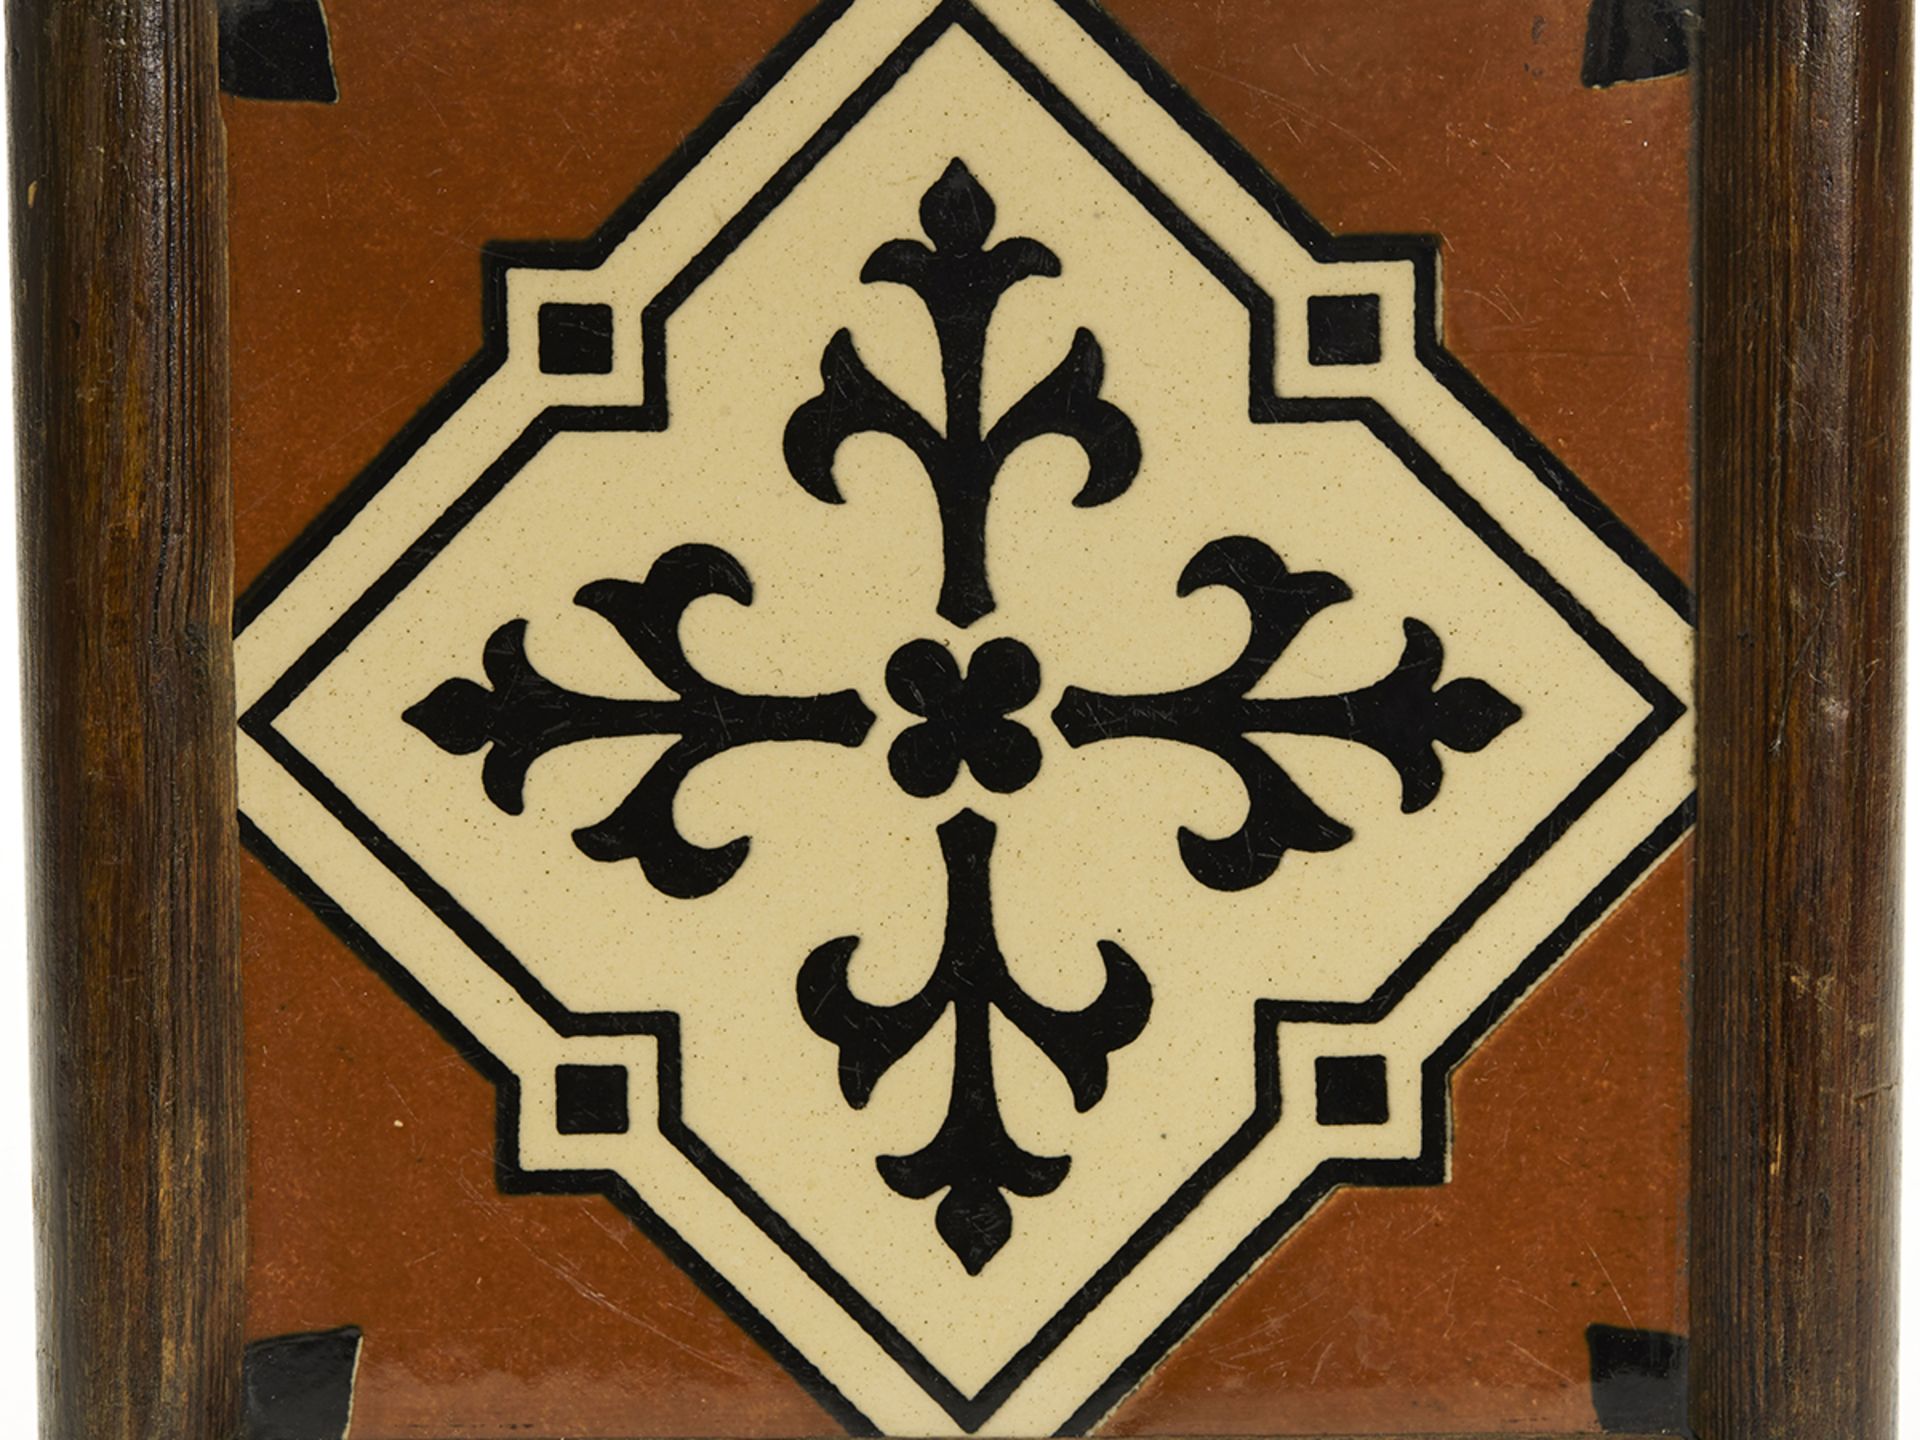 Antique Framed Minton Tile Designed By Pugin 19Th C. - Image 2 of 7